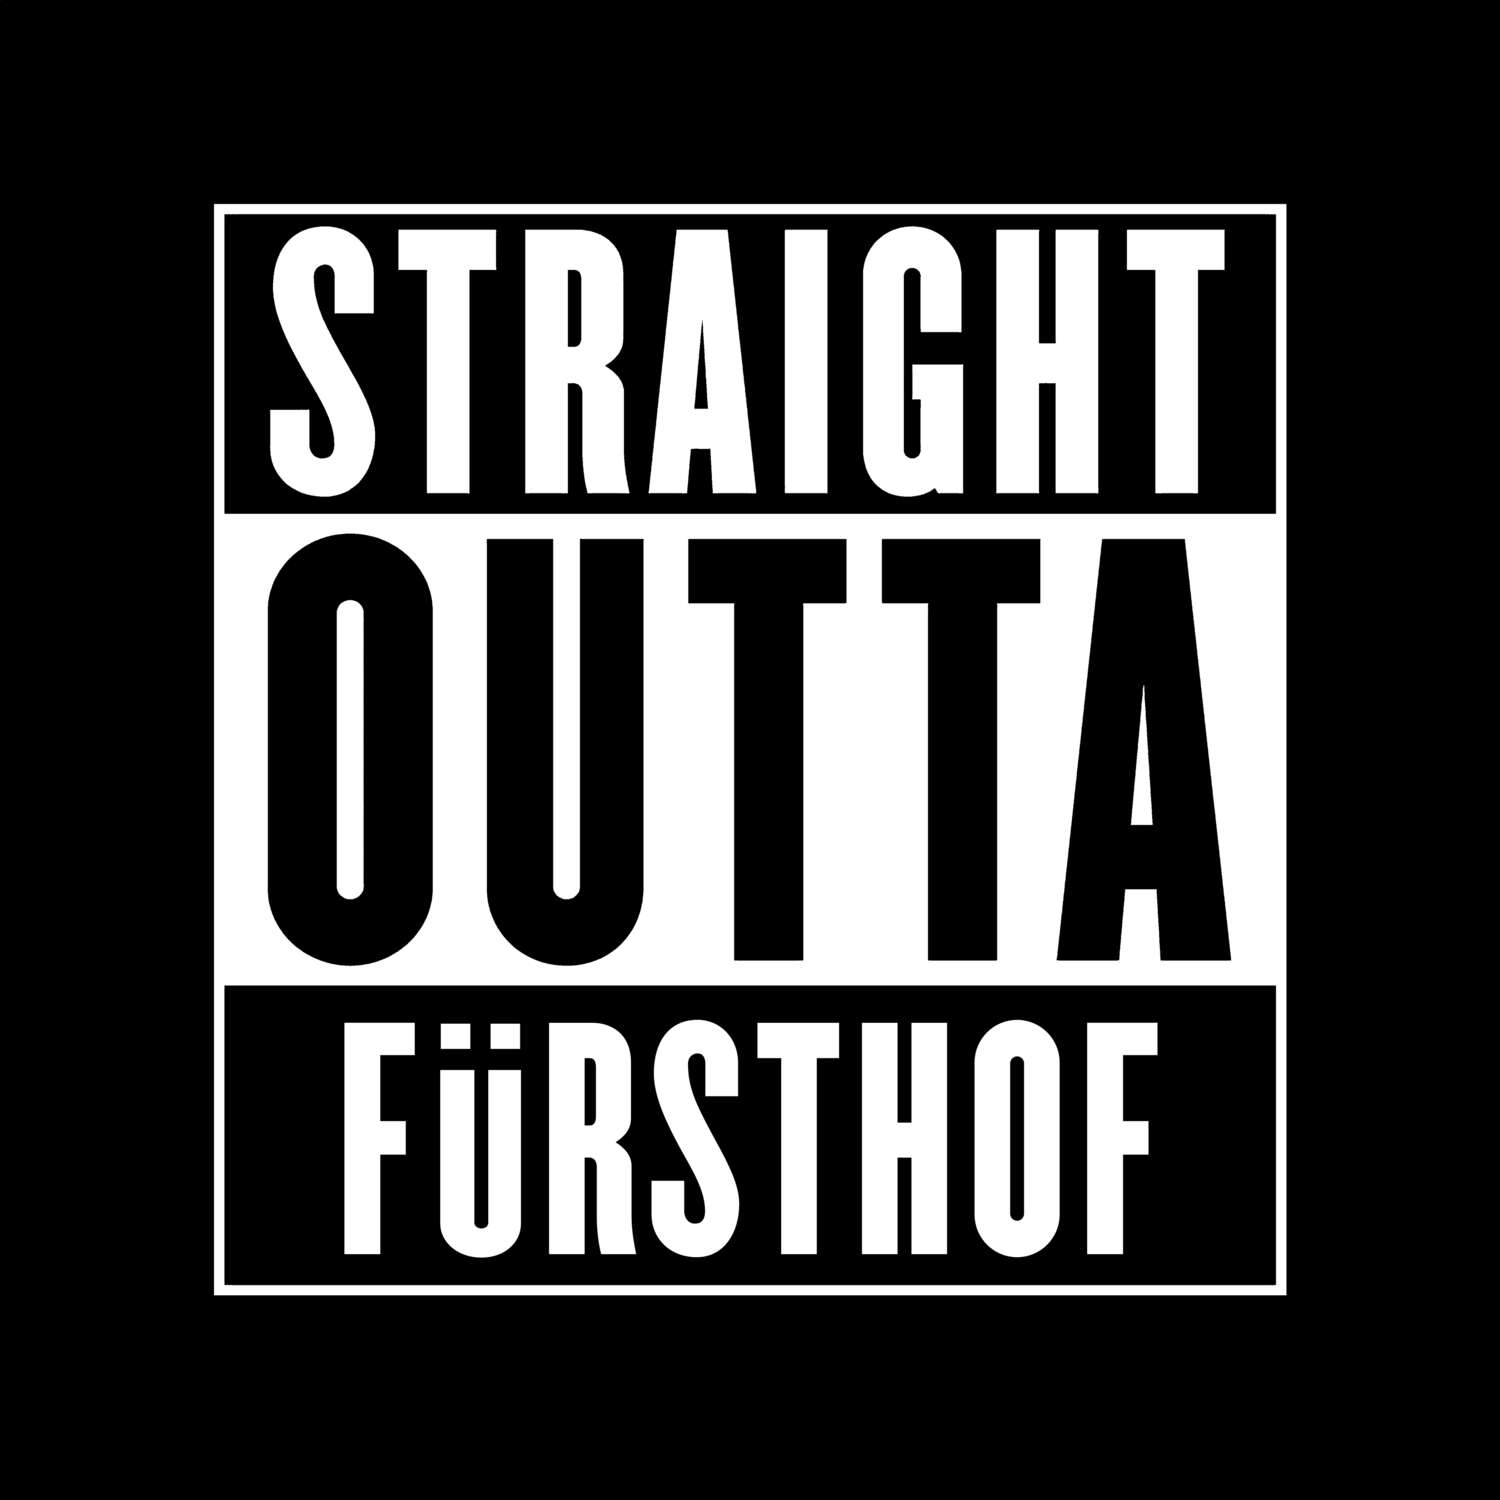 Fürsthof T-Shirt »Straight Outta«